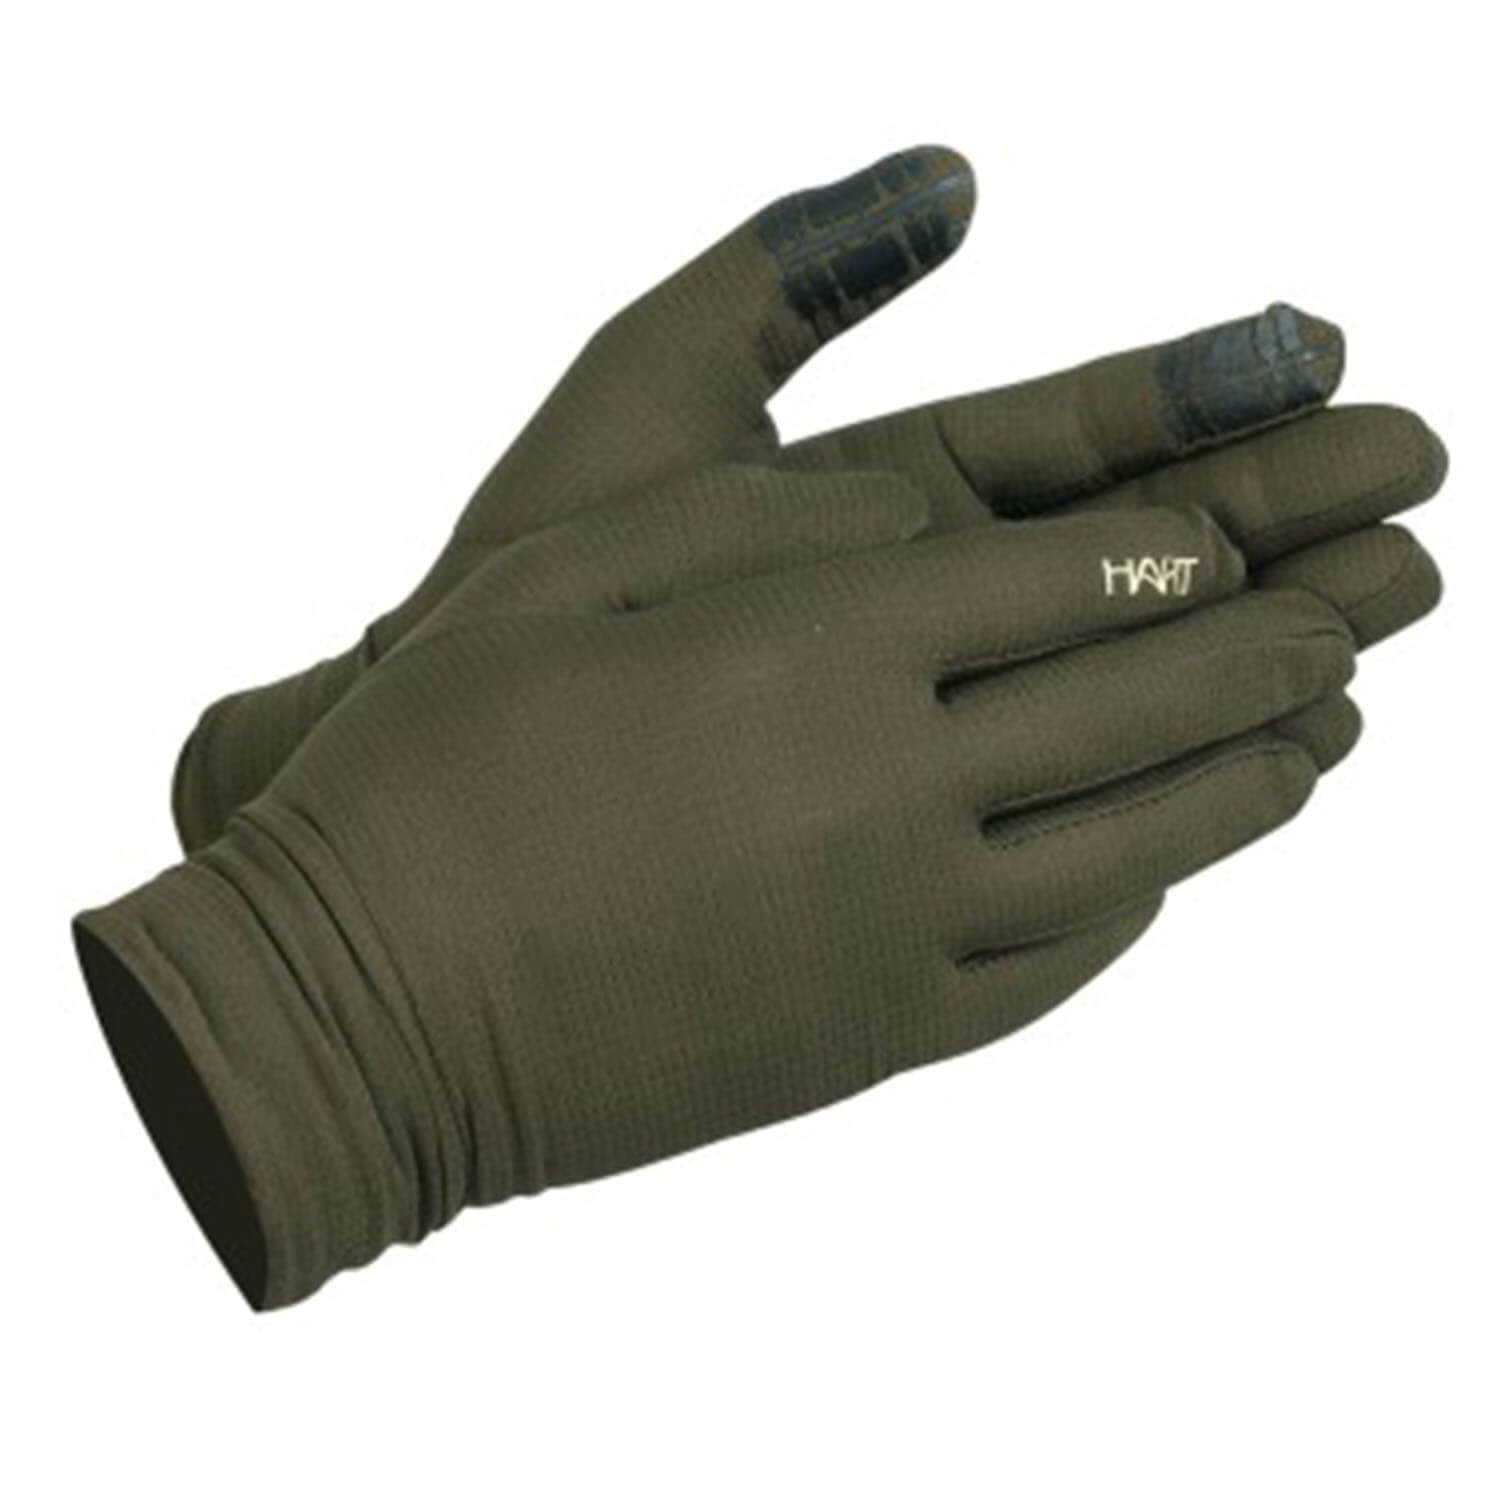  Hart Handschoenen Ural-GC overtrek Ultralight (Groen) - Handschoenen